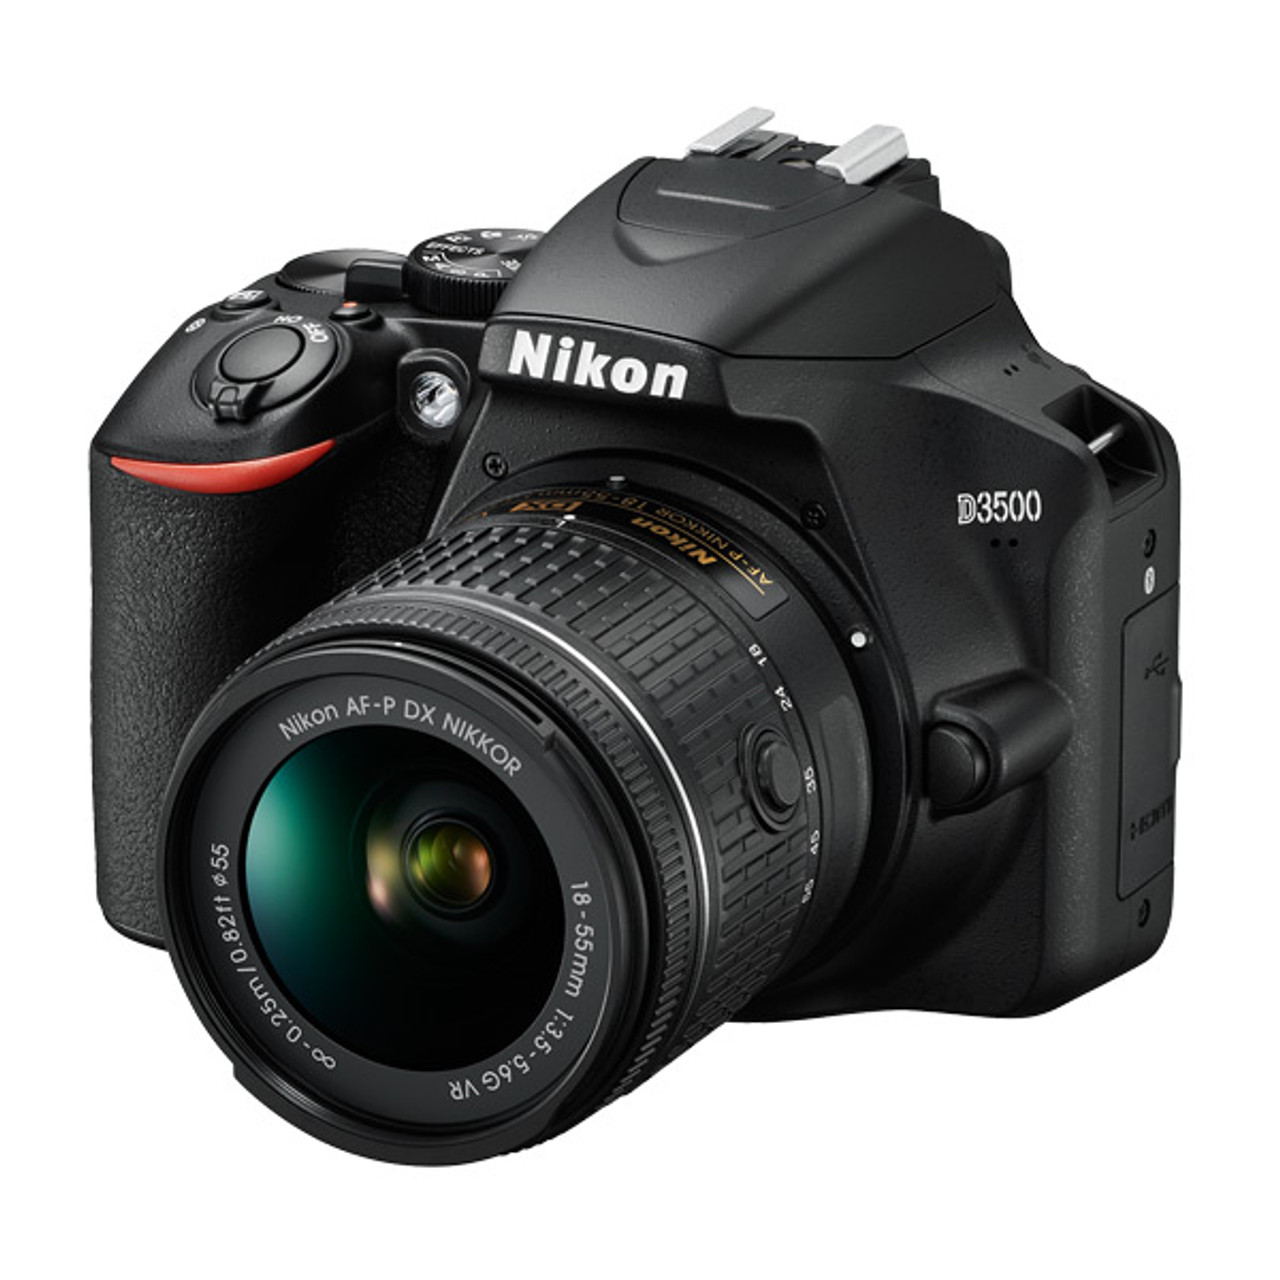 Nikon D3500 AF-P DX 18-55mm f/3.5-5.6G VR kit